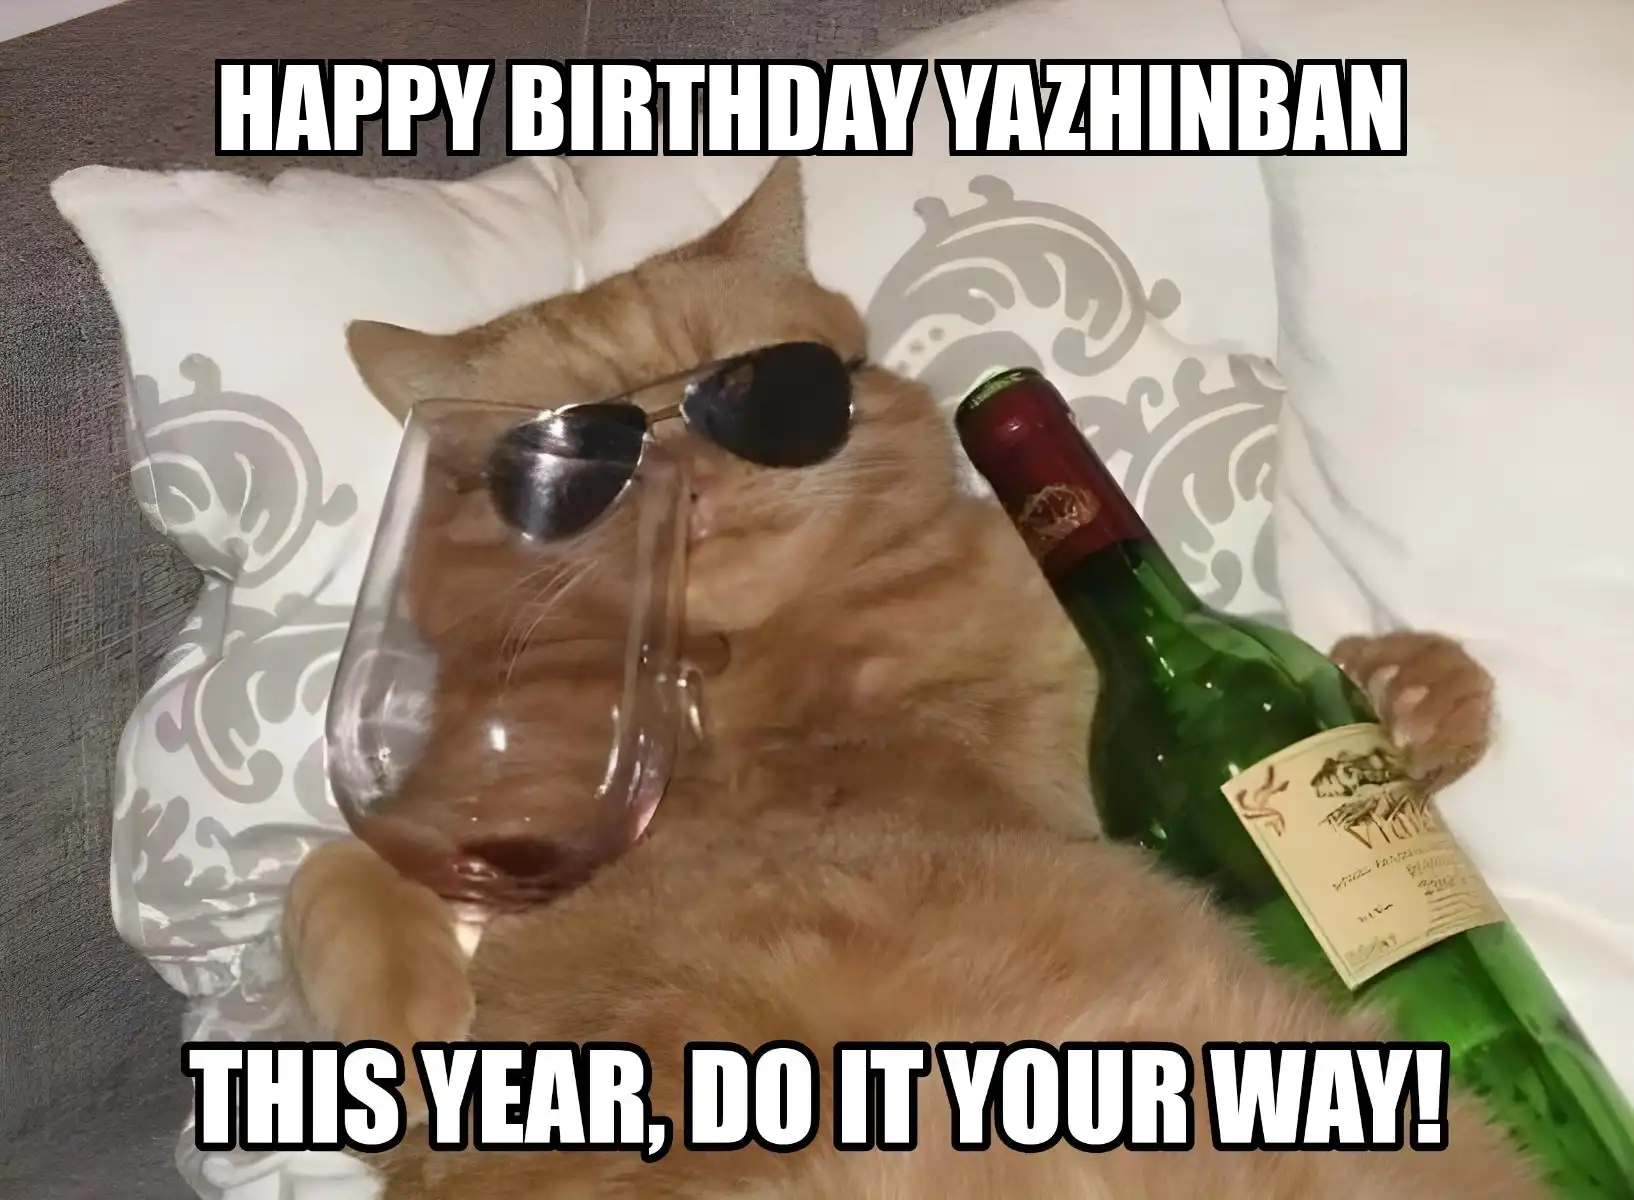 Happy Birthday Yazhinban This Year Do It Your Way Meme